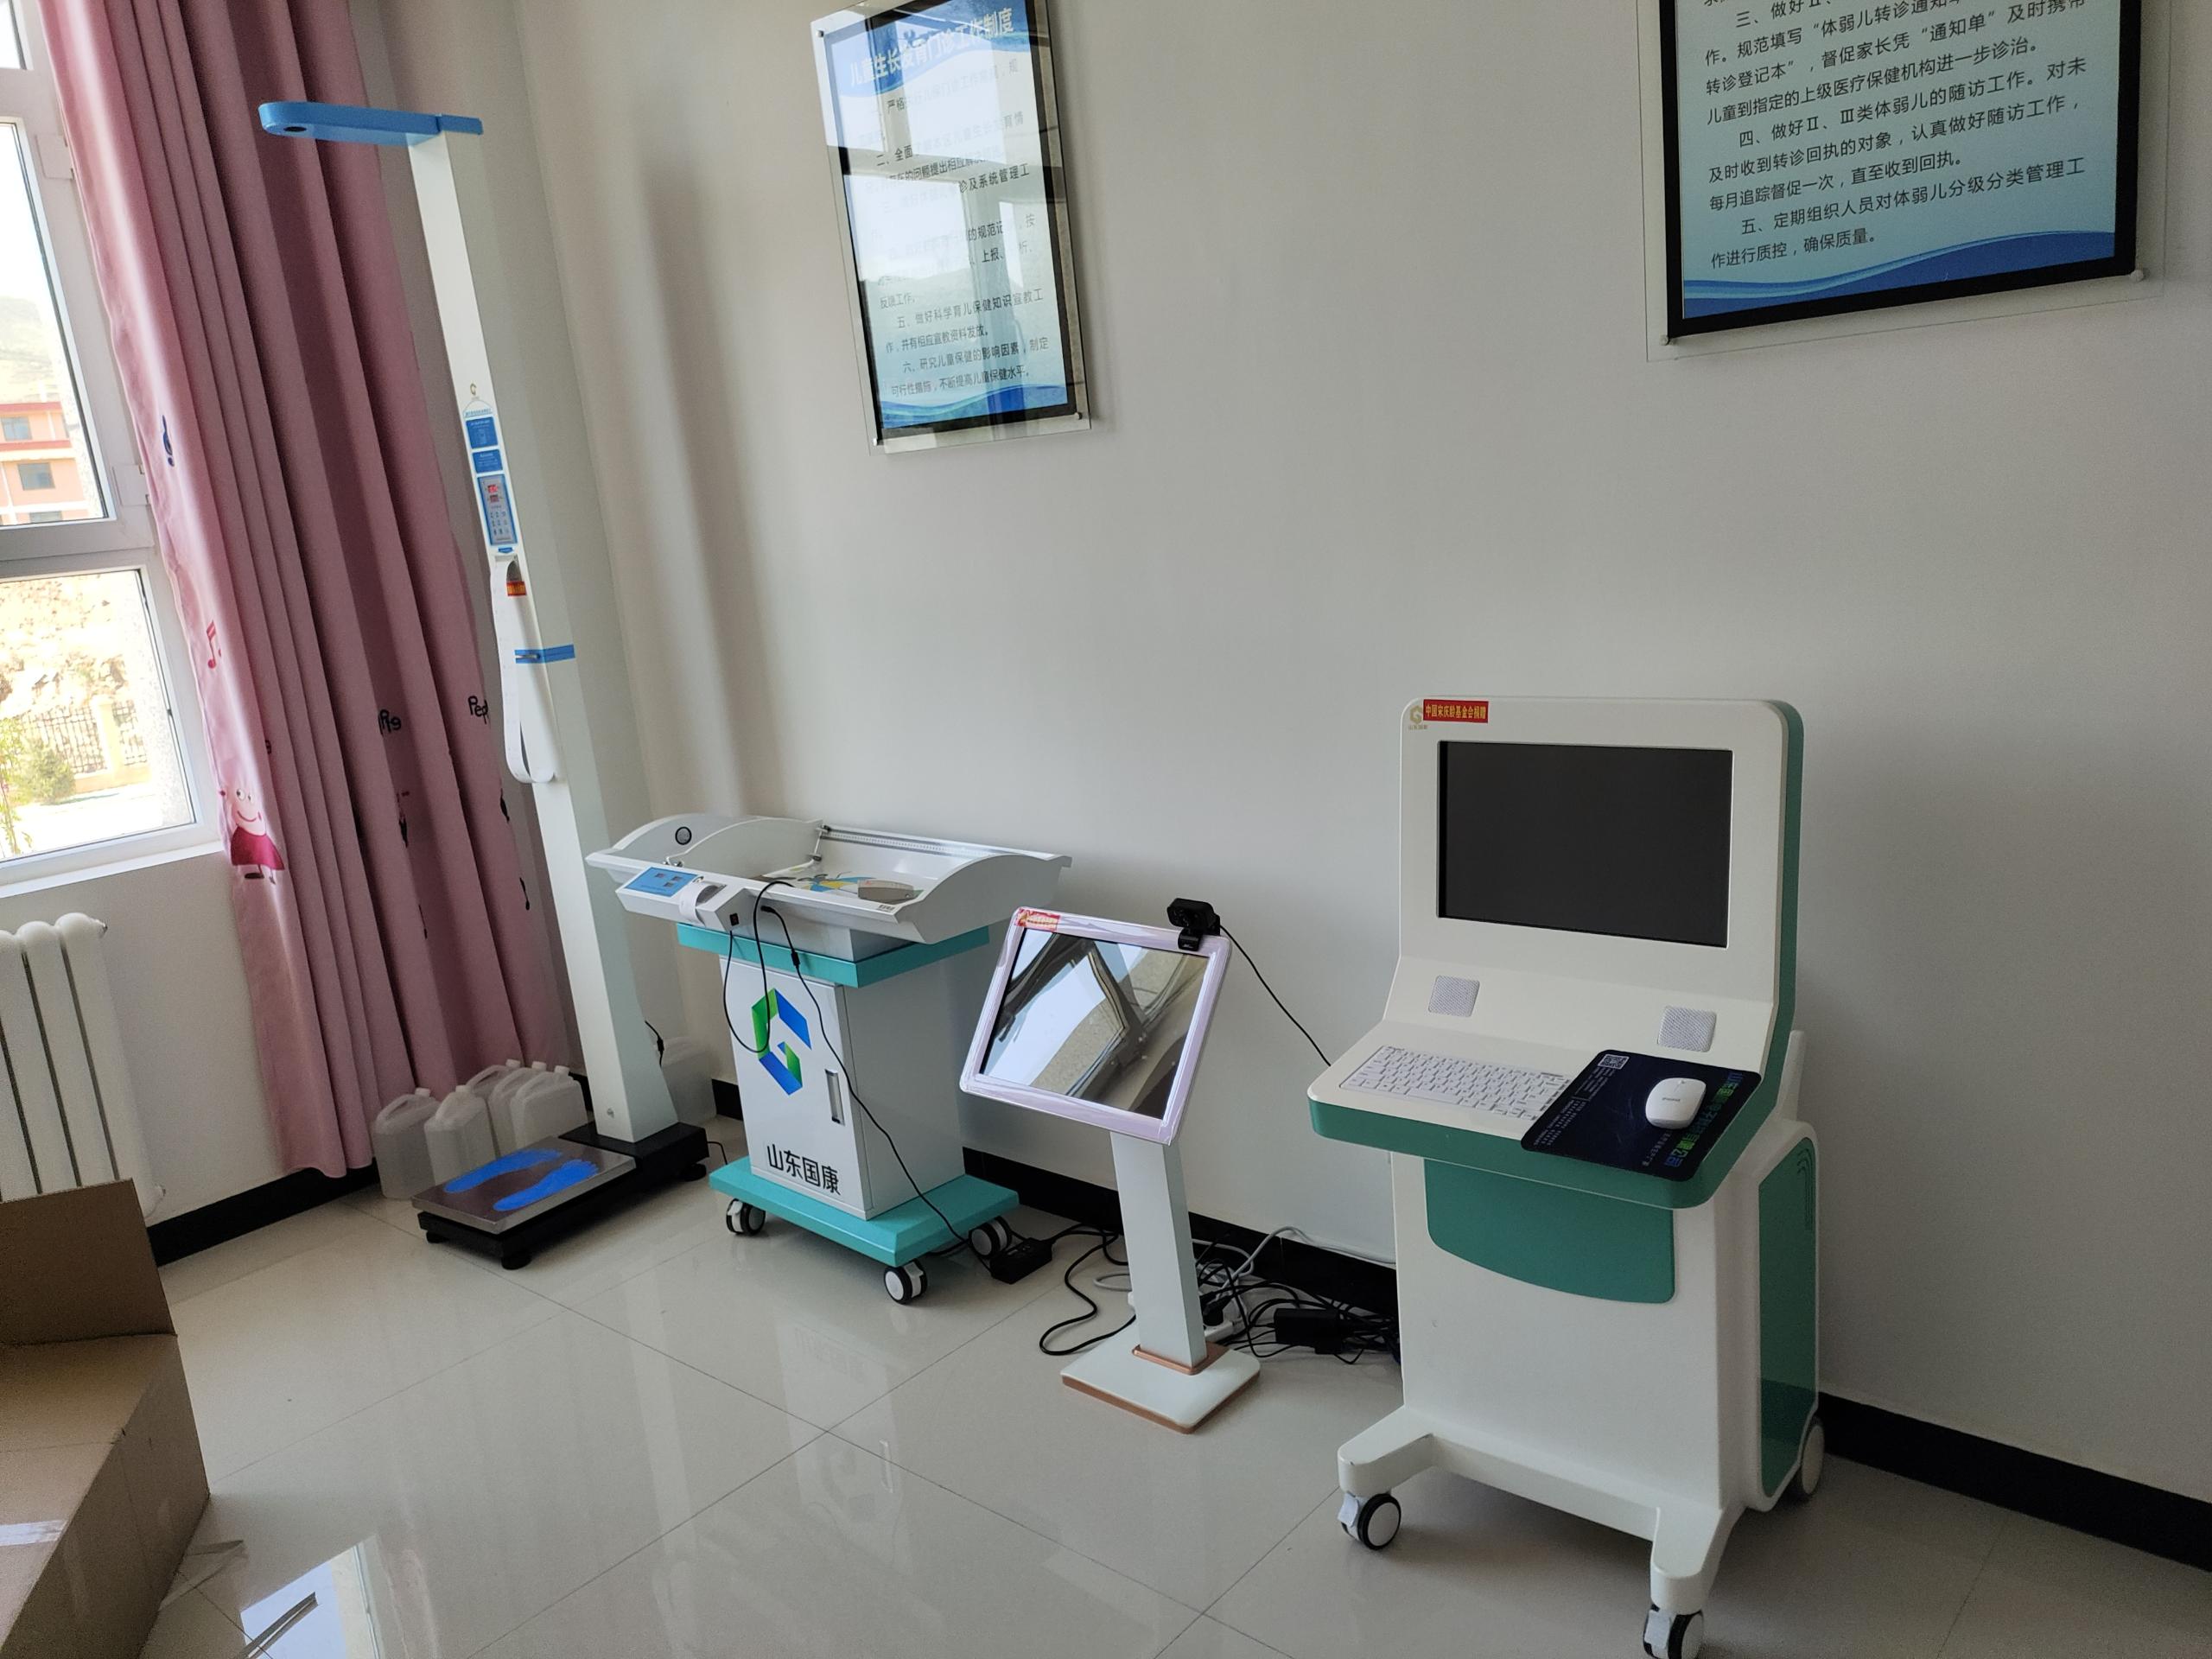 国康儿童智力测试仪厂家历经数日于5日四川南充某妇幼保健院成功安装12.9